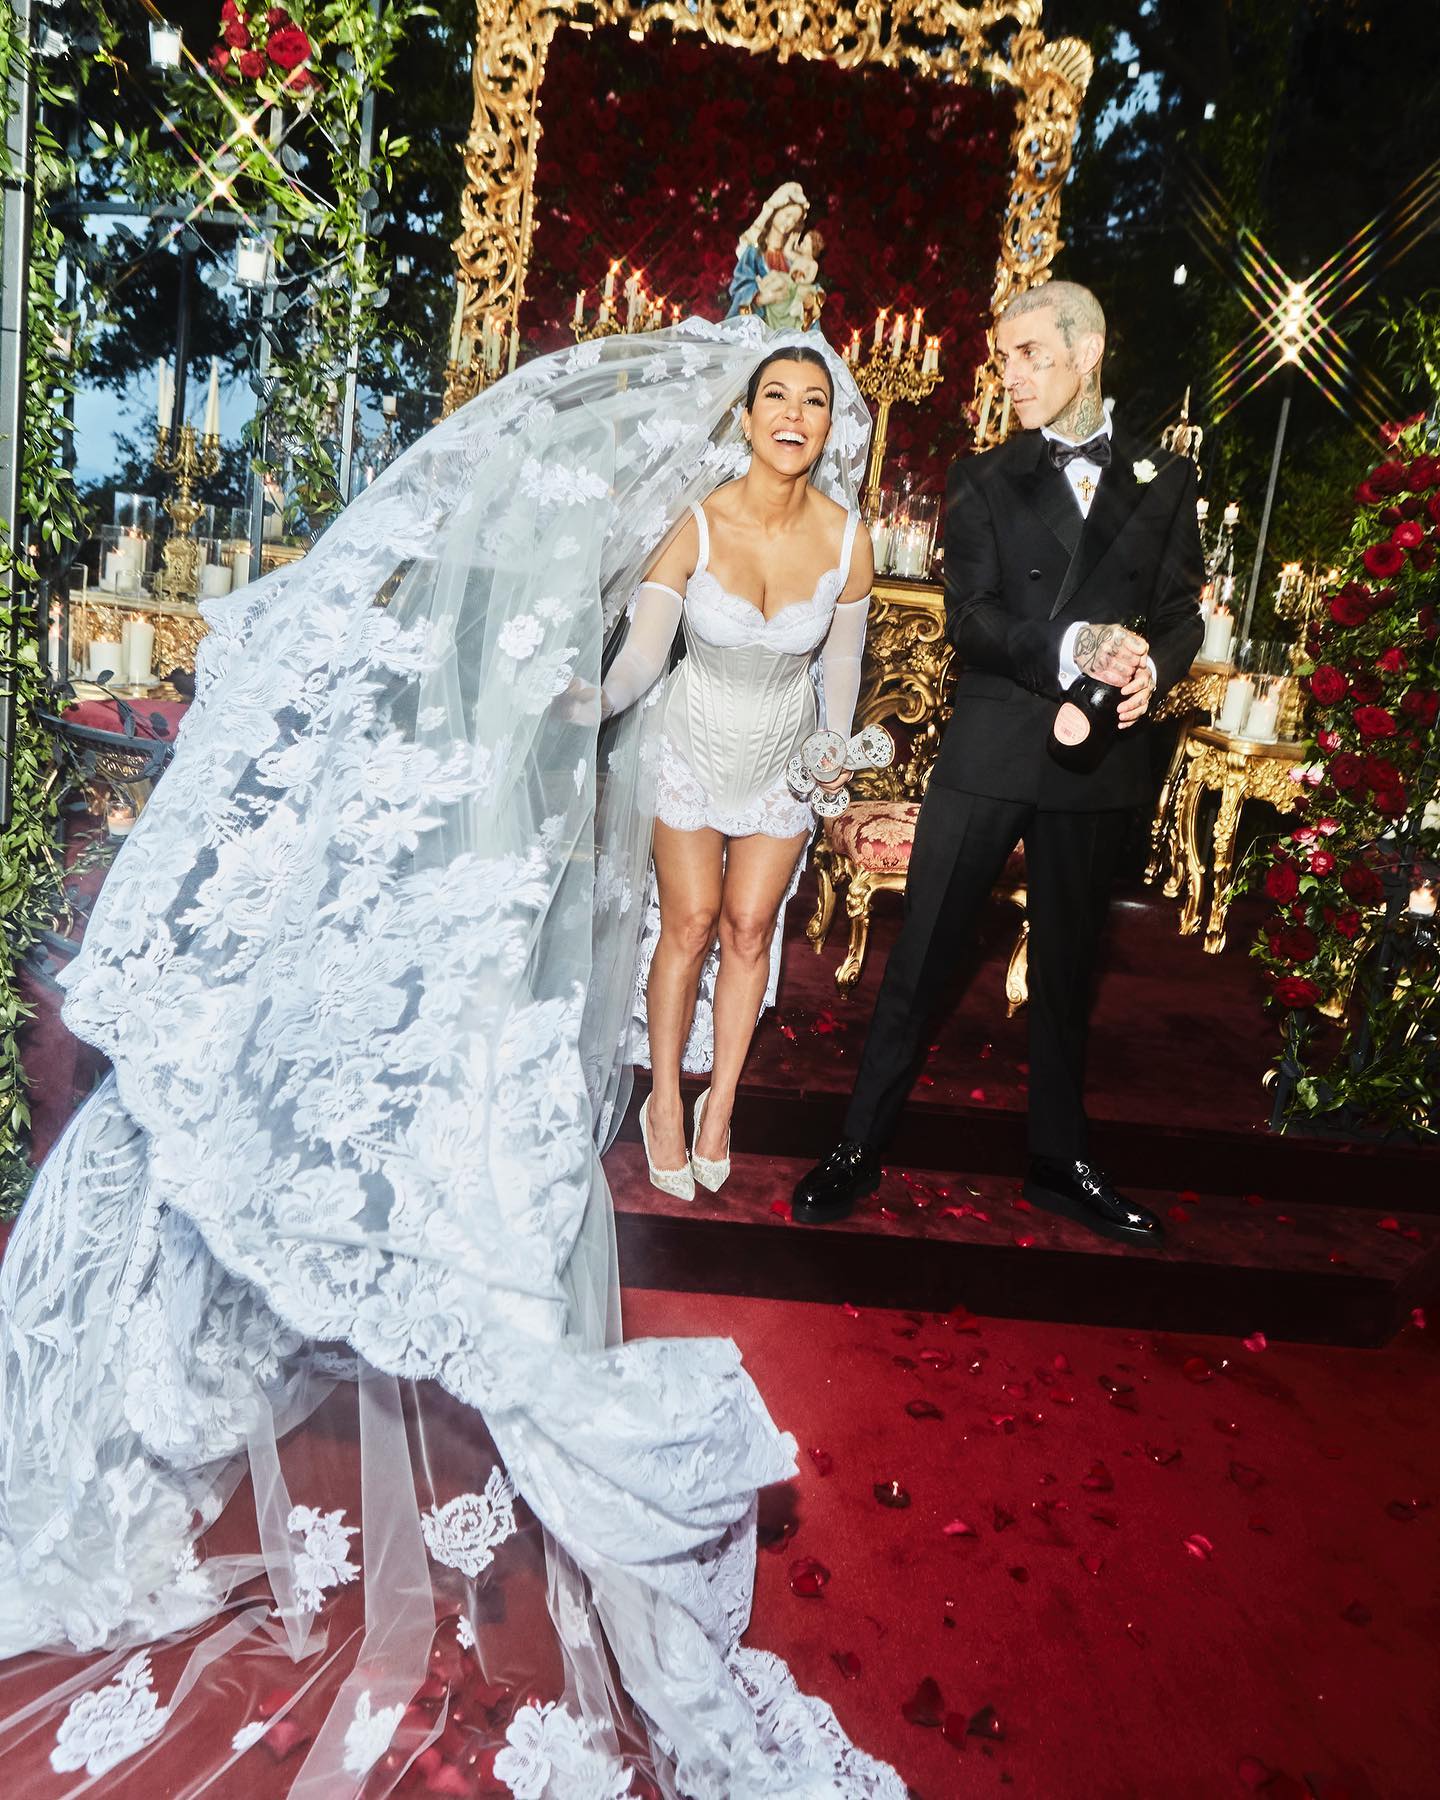 Свадьба Кортни Кардашьян: звёздные гости, Дева Мария на фате и критика платья